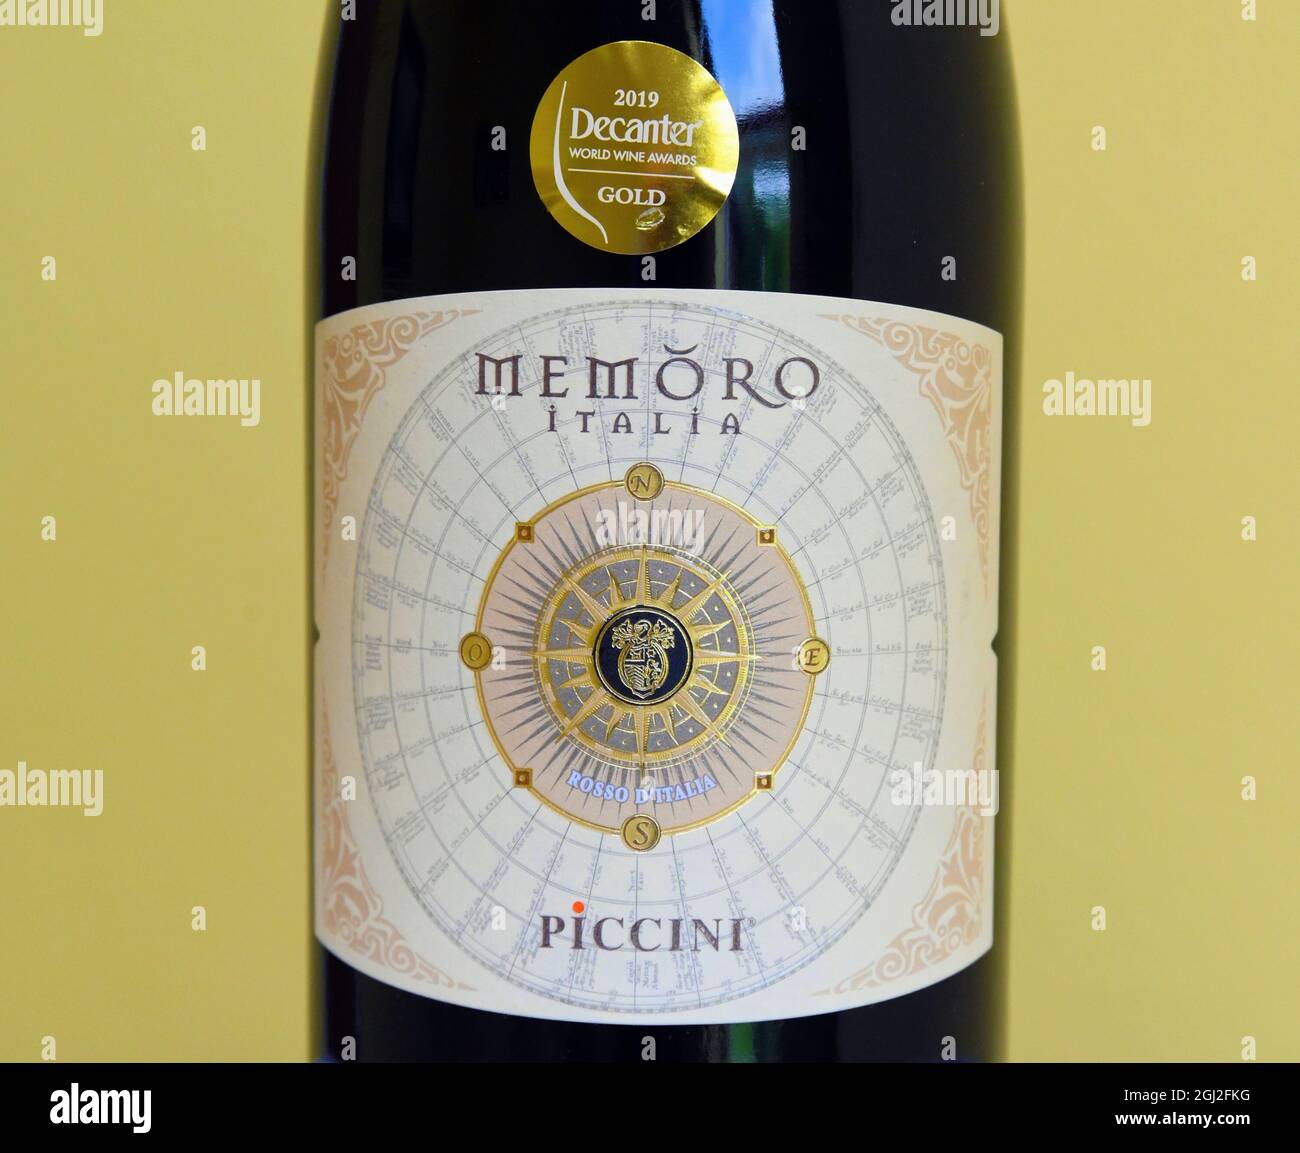 Etichetta del vino. Memoro Italia. Piccini. Rosso d'Italia. 2019 Decanter  World Wine Awards Oro Foto stock - Alamy